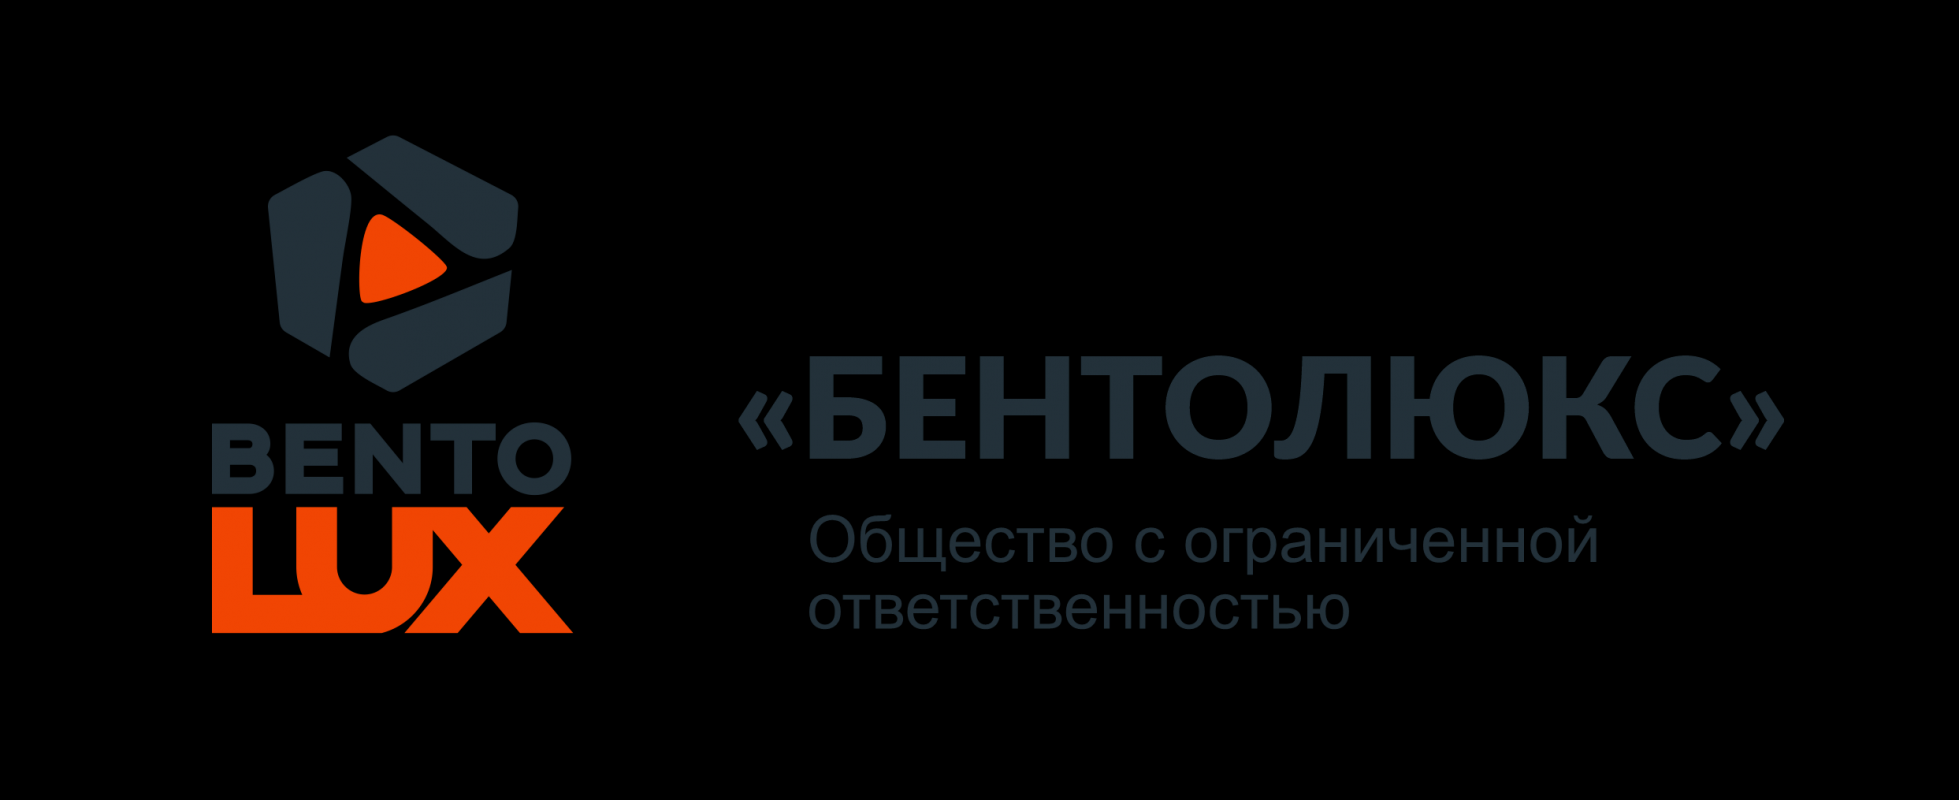 Производственная, активно развивающаяся, добывающая компания ООО "Бентолюкс", расположенна - Новотроицк